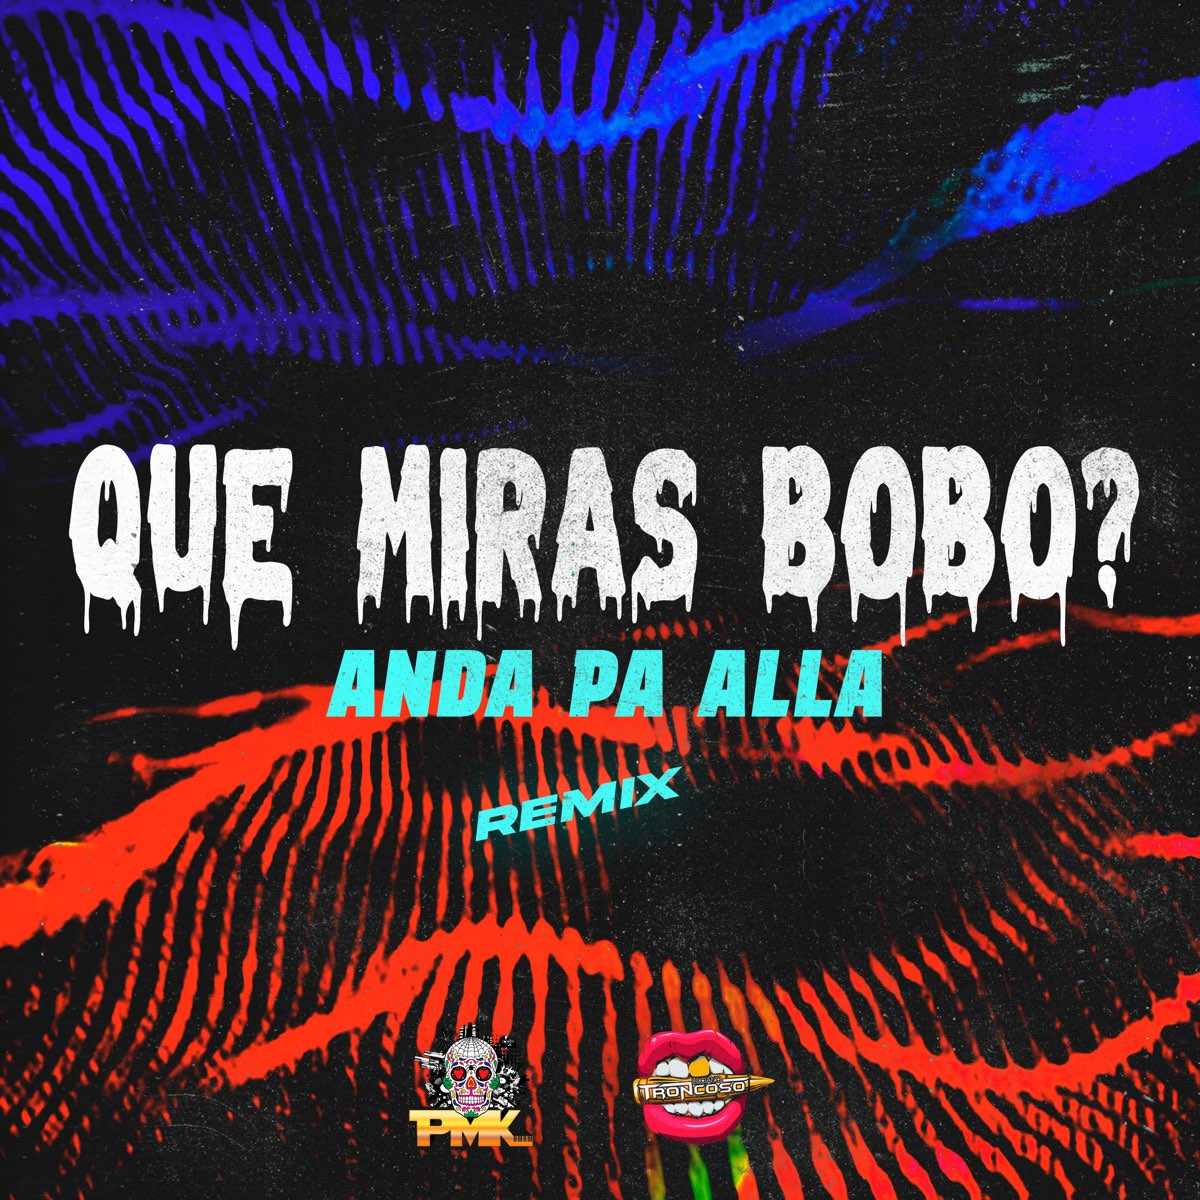 ‎que Miras Bobo Anda Pa Allá Single Álbum De El Kaio Dj Pirata And Dj Luciano Troncoso